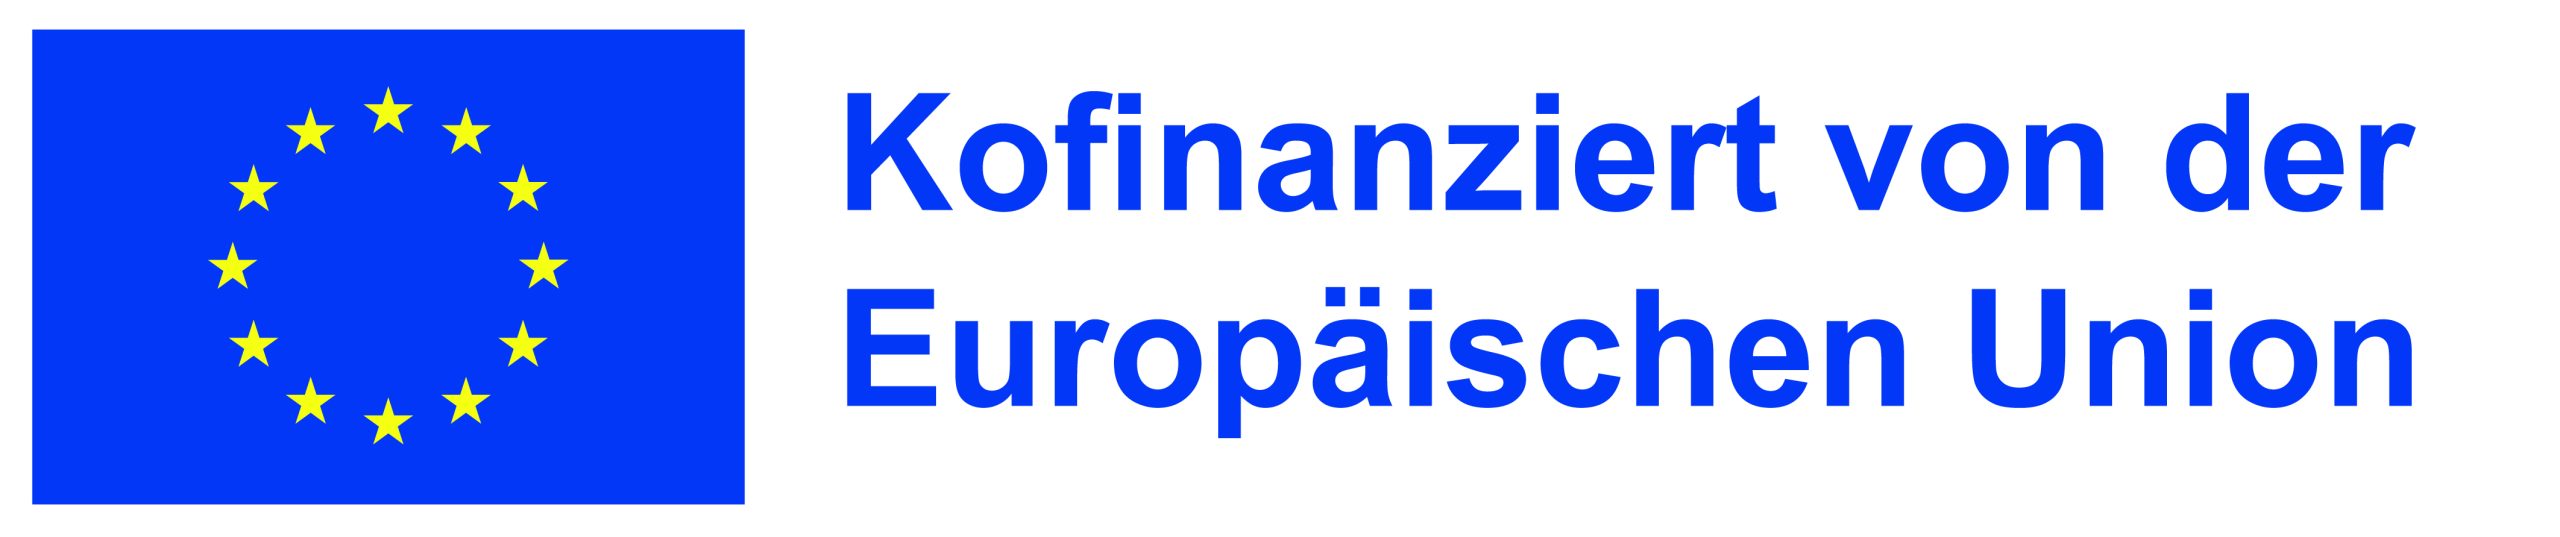 DE Kofinanziert von der Europäischen Union_POS (002)